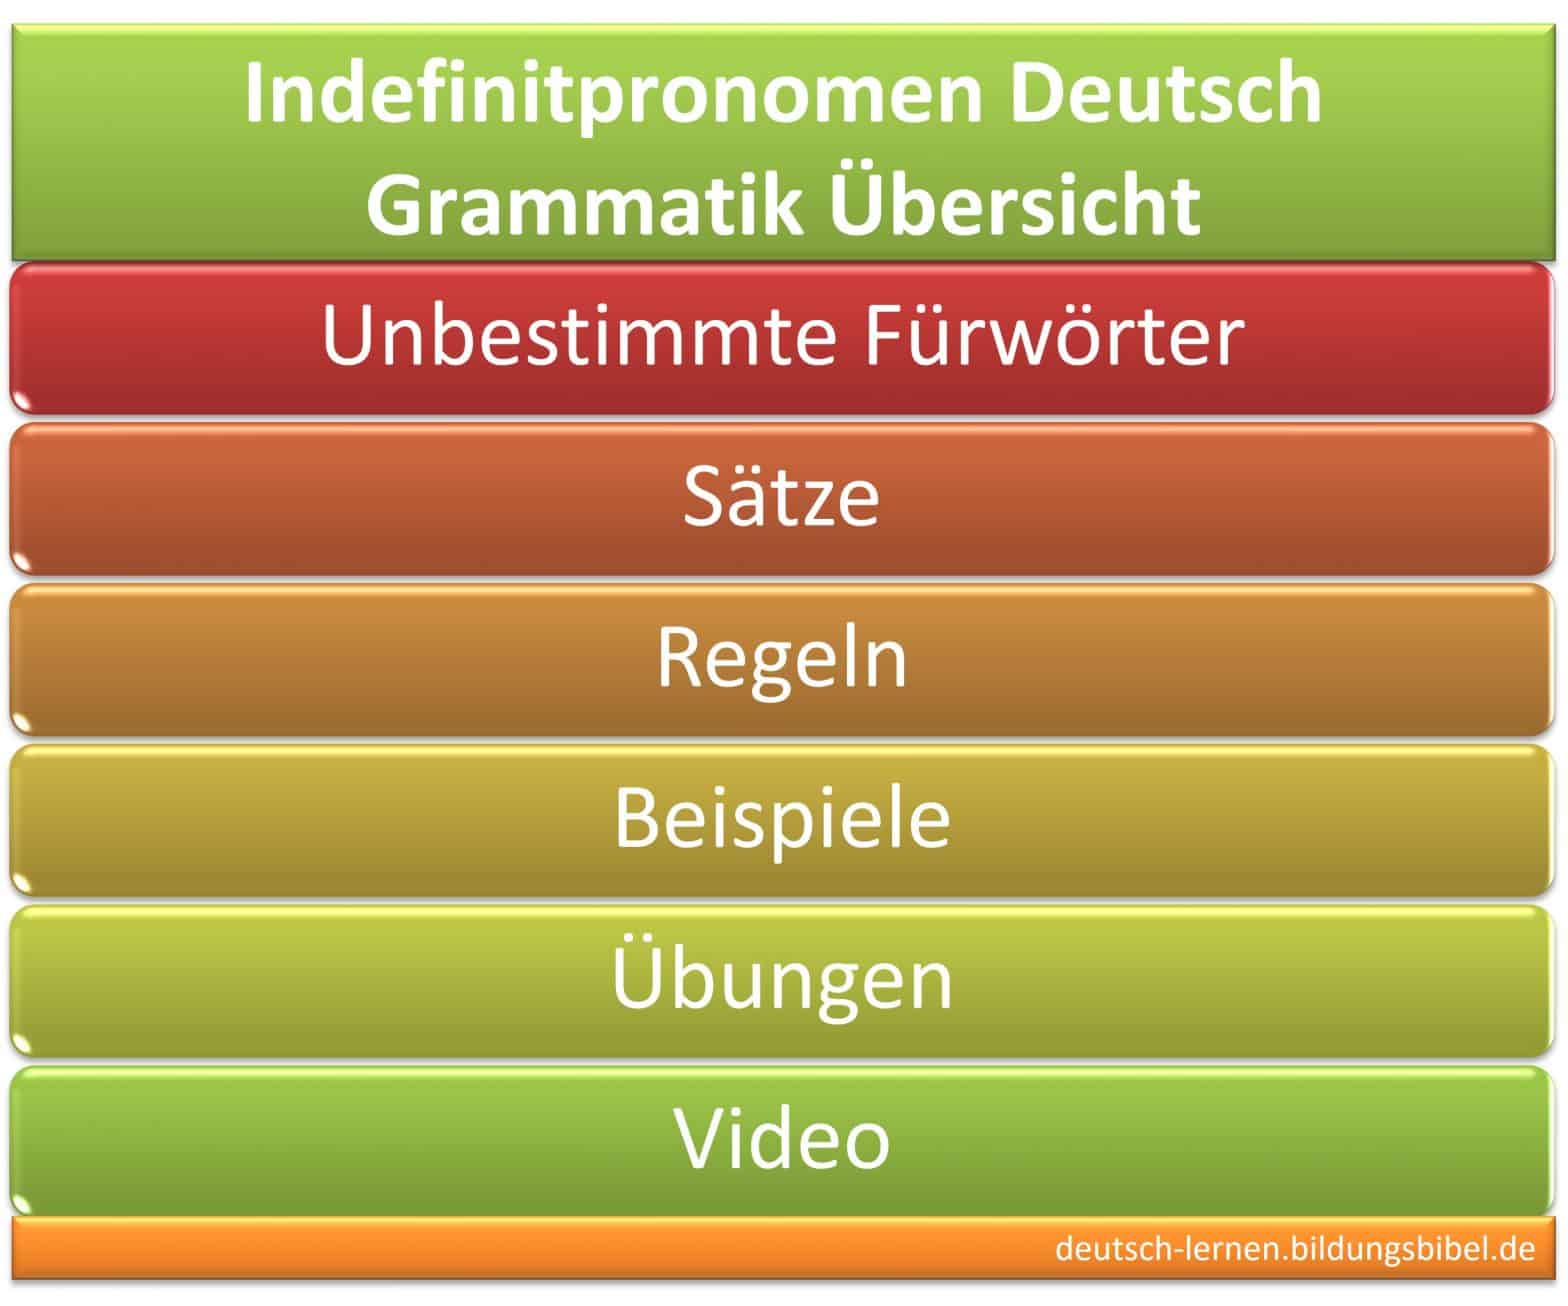 Indefinitpronomen, unbestimmte Fürwörter, Regeln, Beispiele, Sätze, Beziehung, Arbeitsblätter, Video, Übungen, Deutsch Grammatik lernen.